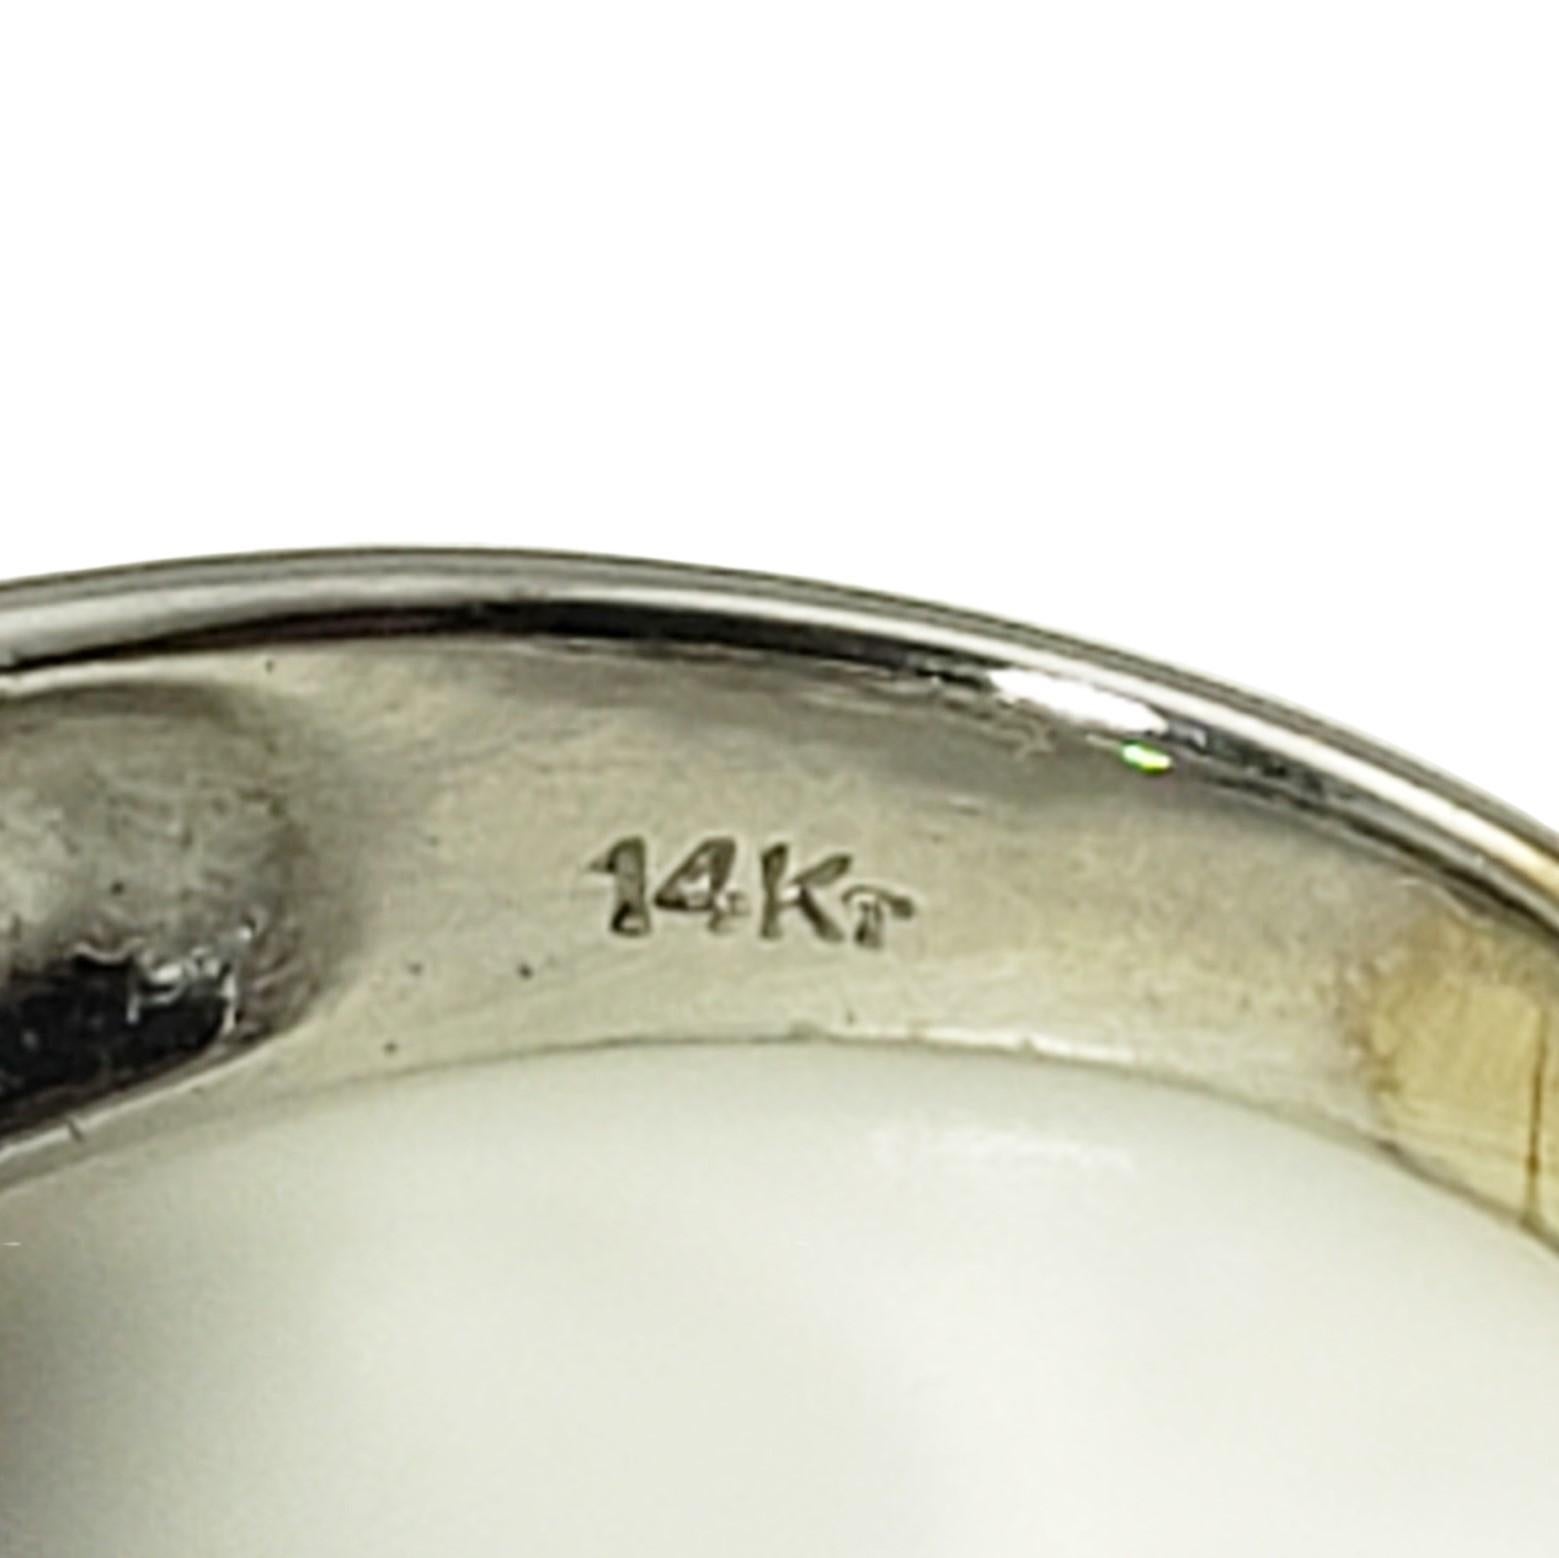 Vintage 14 Karat White Gold and Diamond Band Ring Size 4.75-

Cette bague étincelante comporte 60 diamants baguettes sertis dans de l'or blanc 14K aux détails magnifiques. Largeur : 9 mm. Tige : 3 mm.

Poids total approximatif des diamants : 1.20